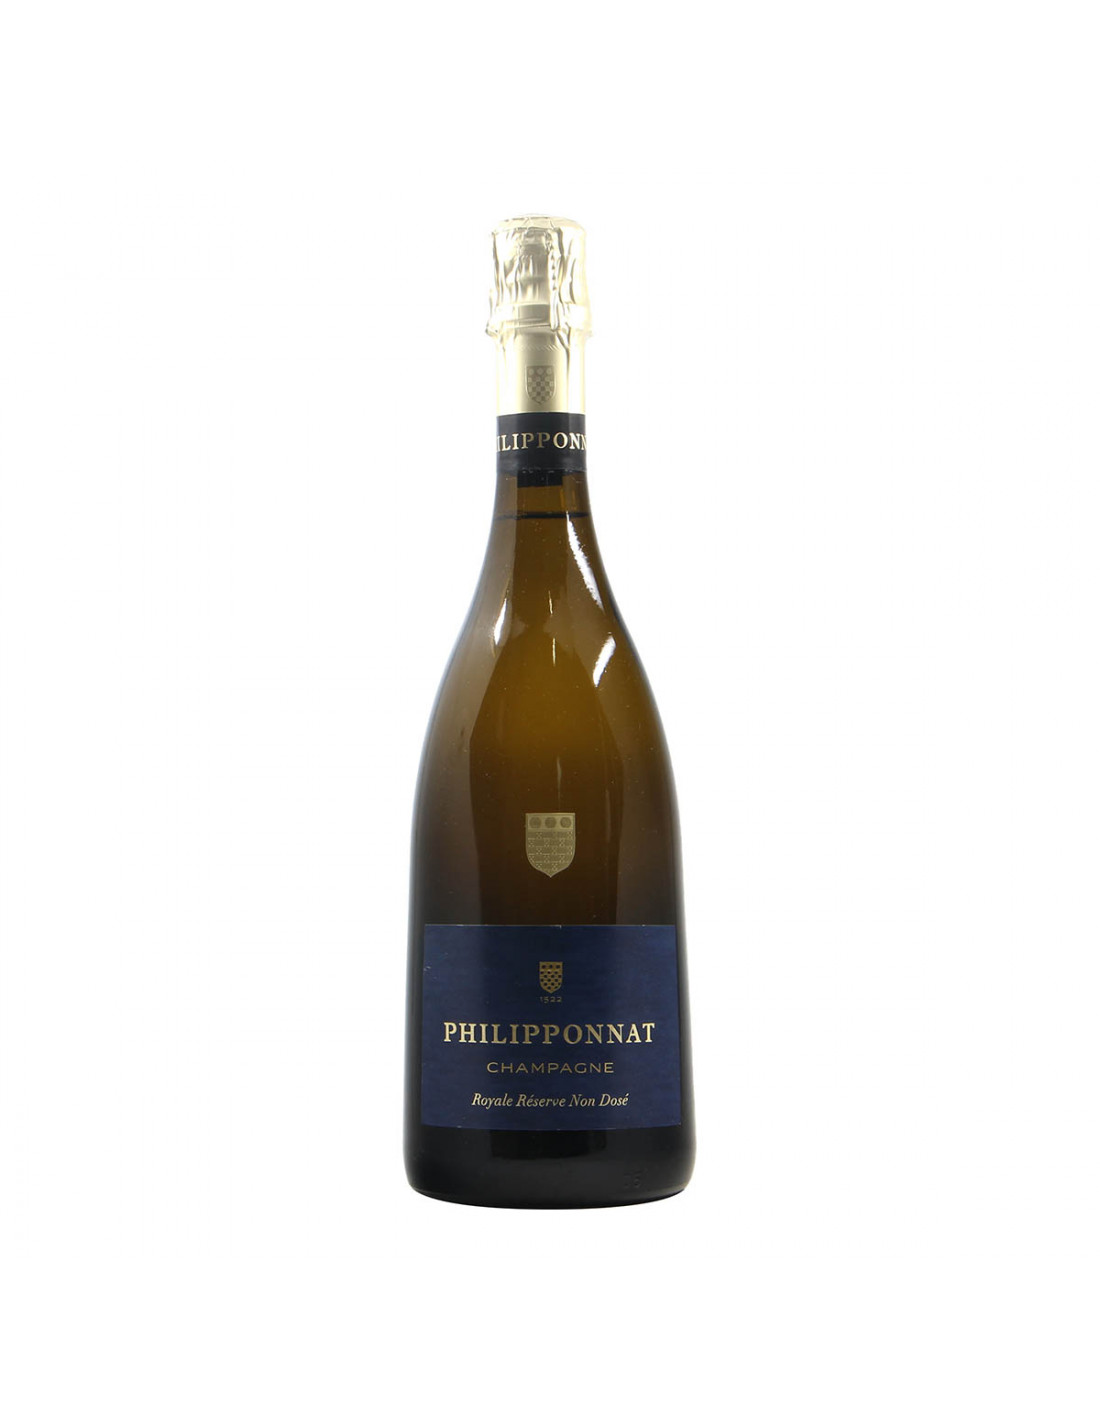 Philipponnat Champagne Royal Reserve Non Dose 2015 Grandi Bottiglie